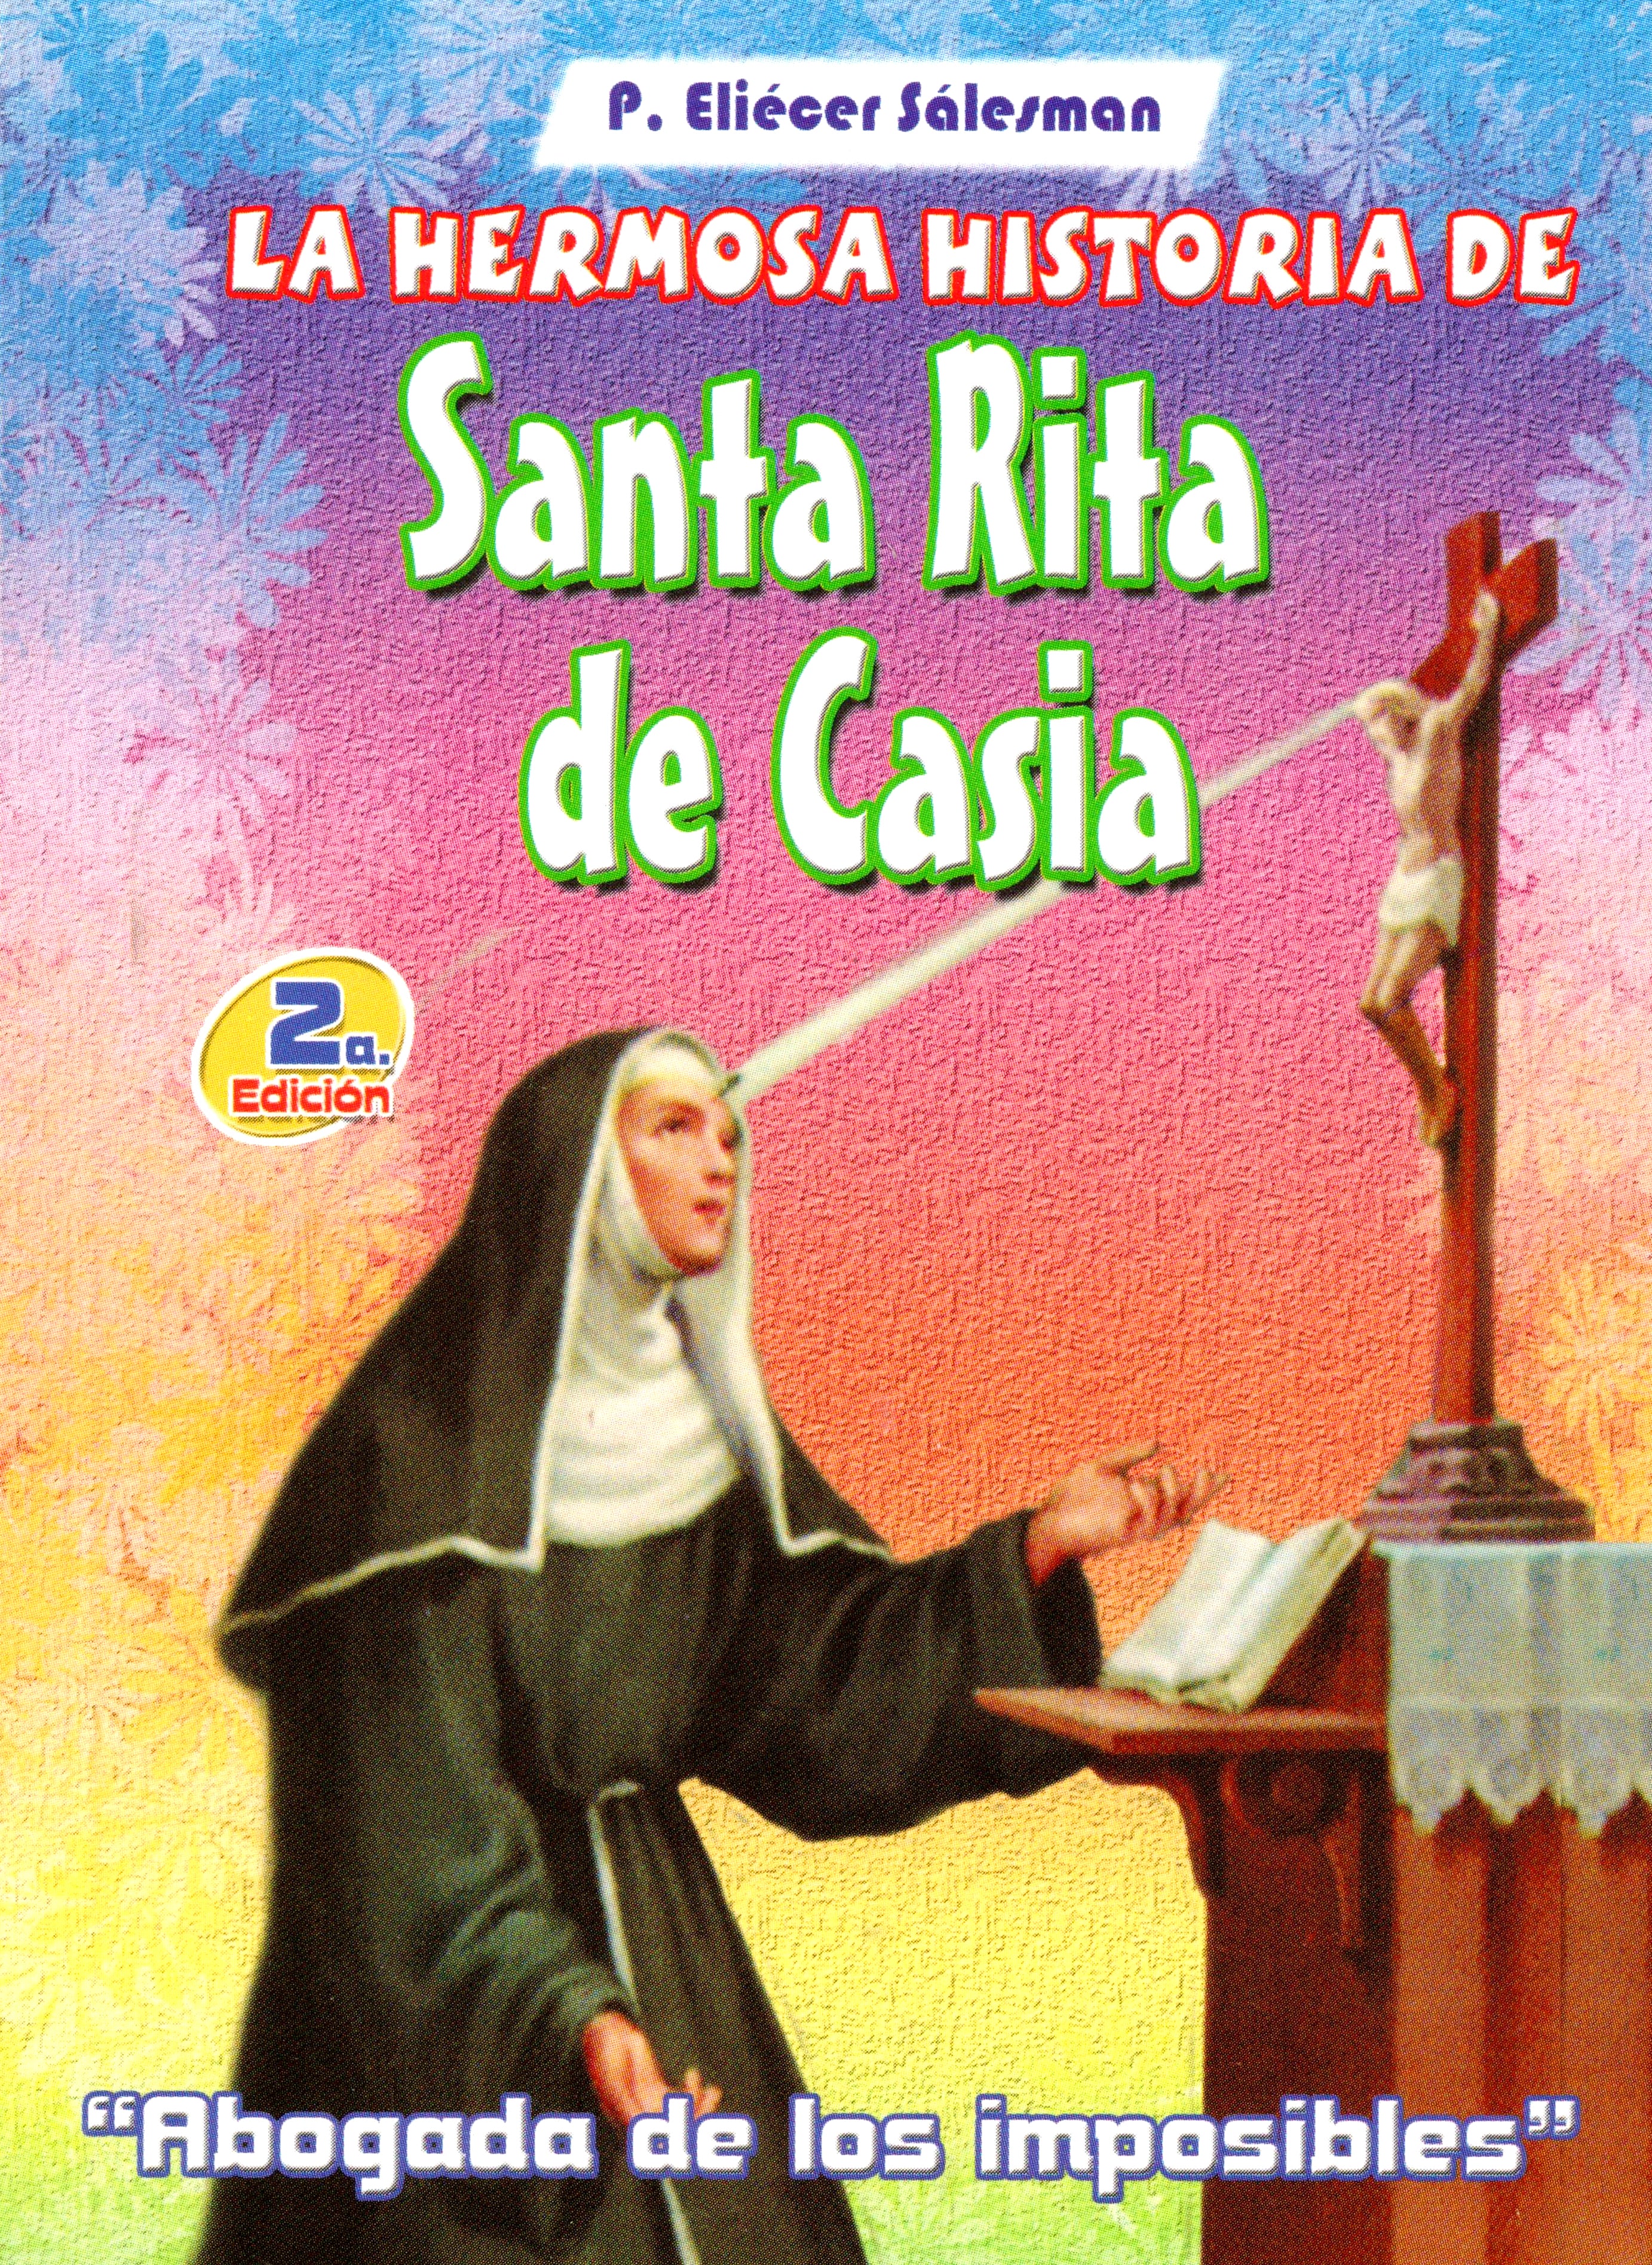 La hermosa historia de Santa Rita de Casia, Abogada de los imposibles